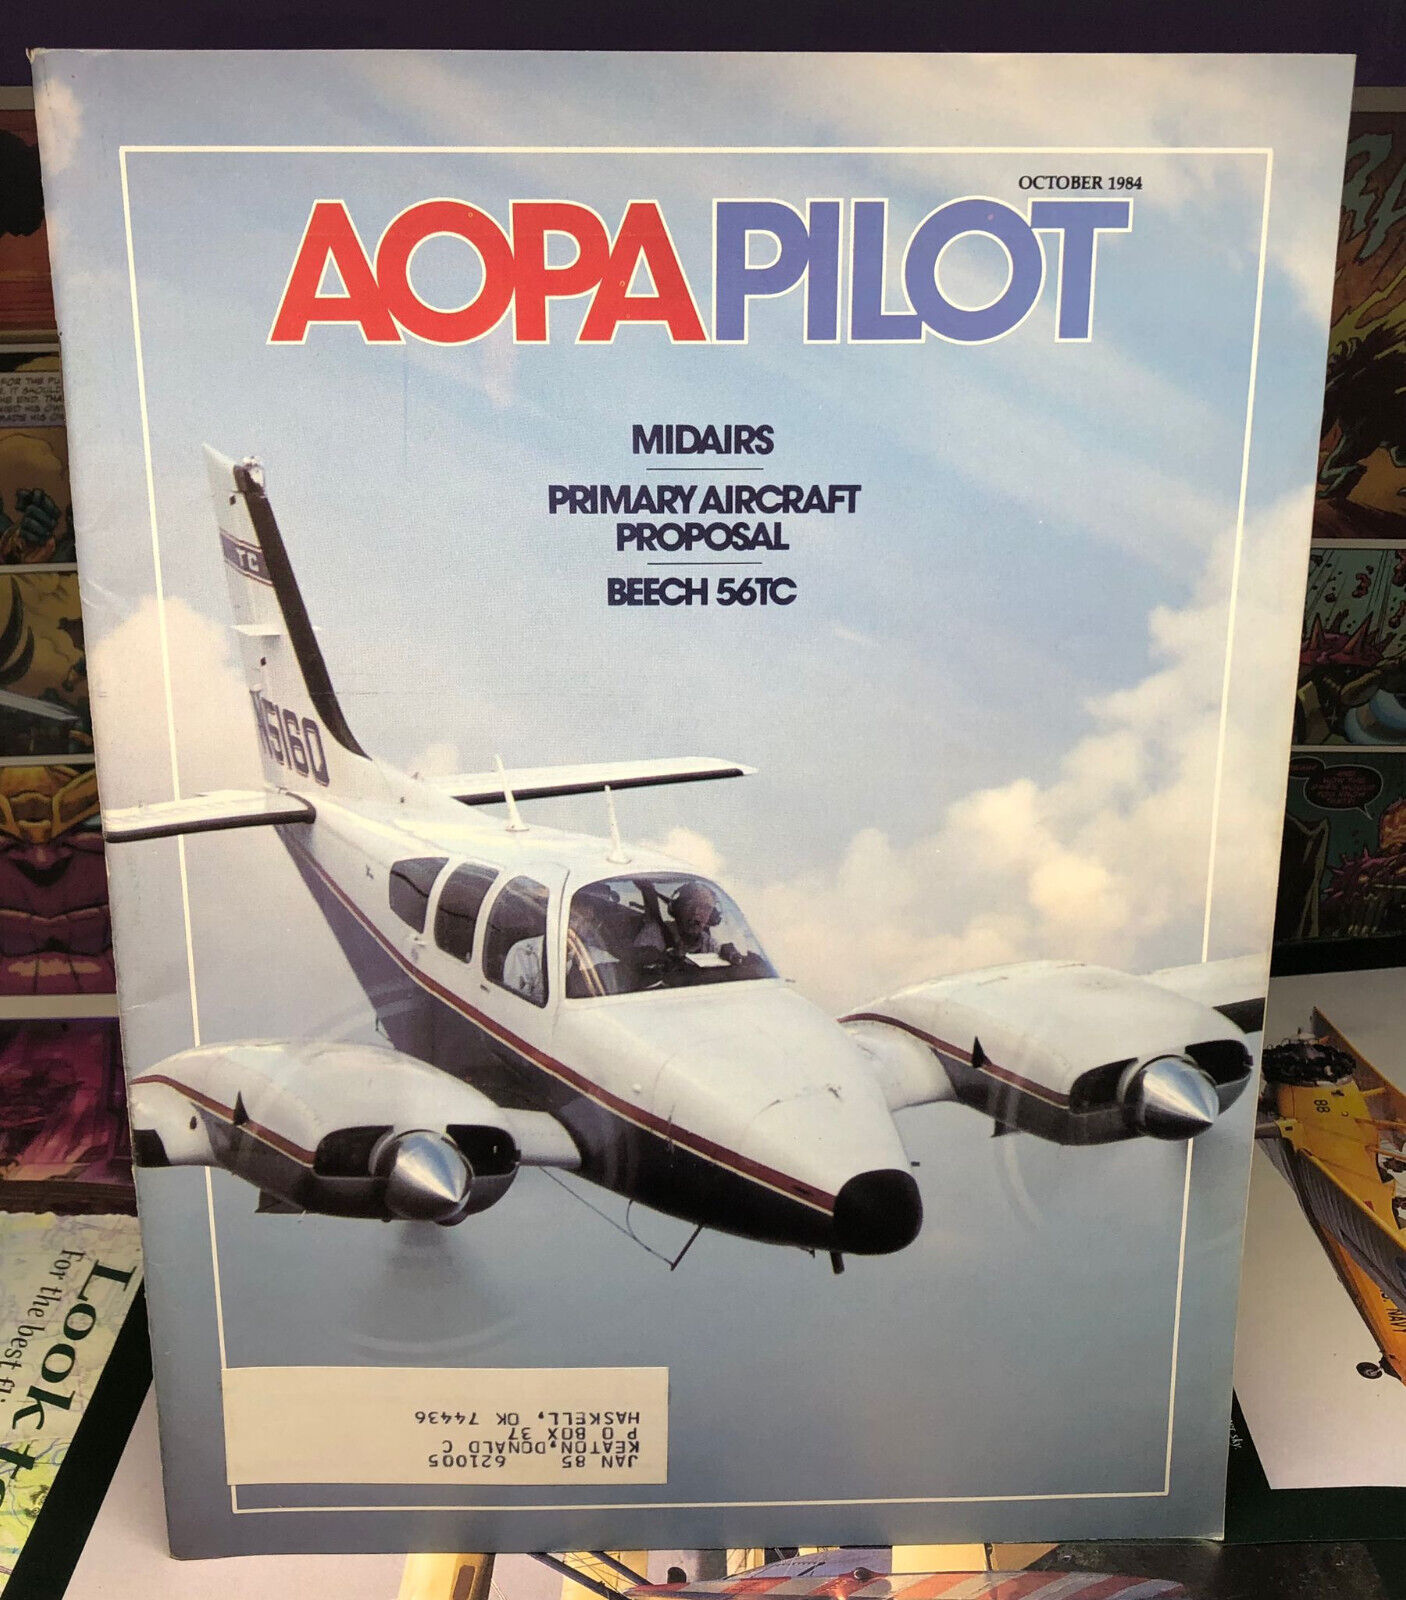 Aopa Pilot Magazine - October 1984,  Midairs, Primary Aircraft Proposal